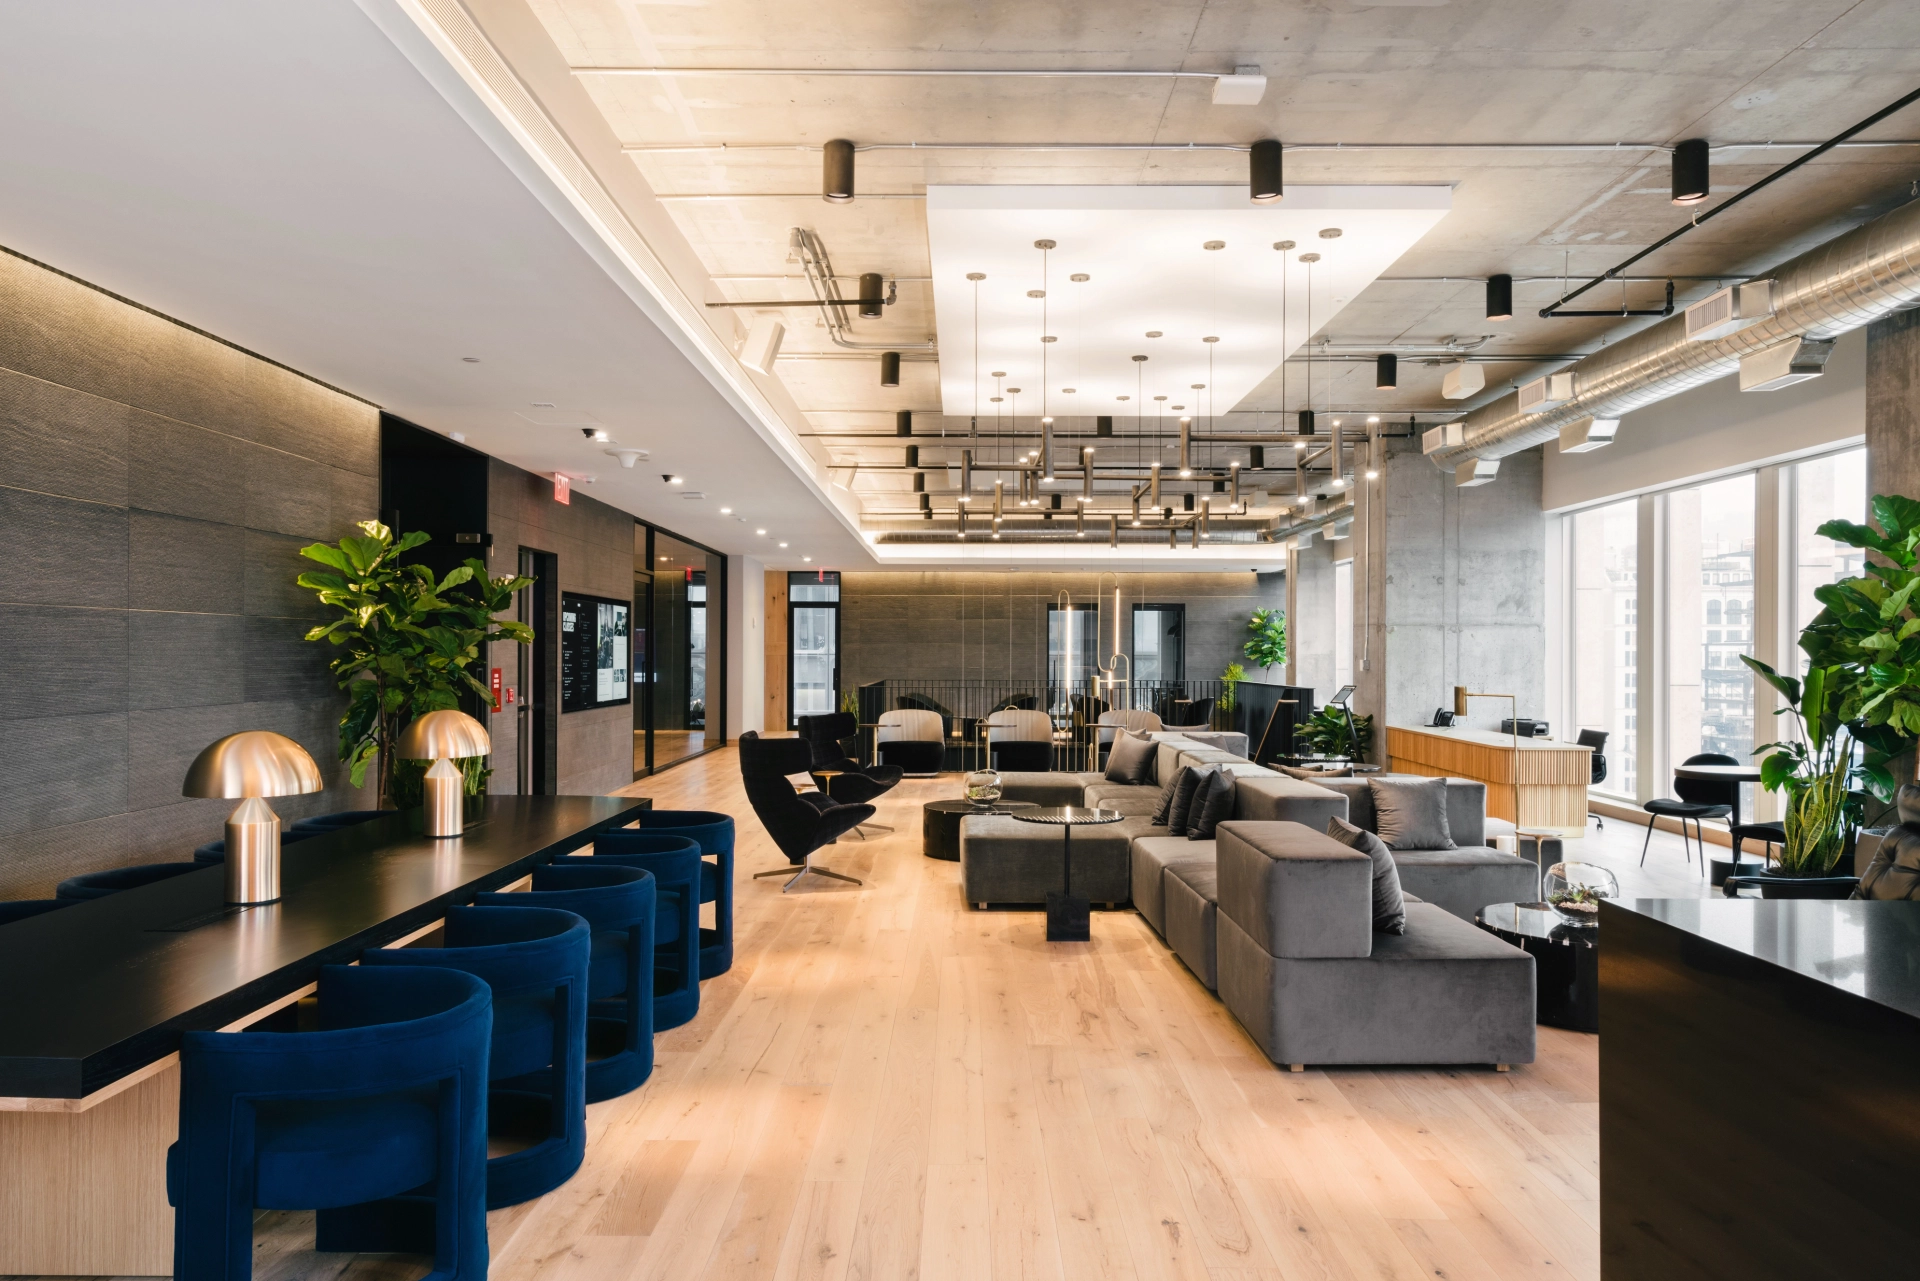 Un hall d'entrée d'immeuble de bureaux contemporain avec un espace de travail polyvalent et des salles de réunion élégantes.